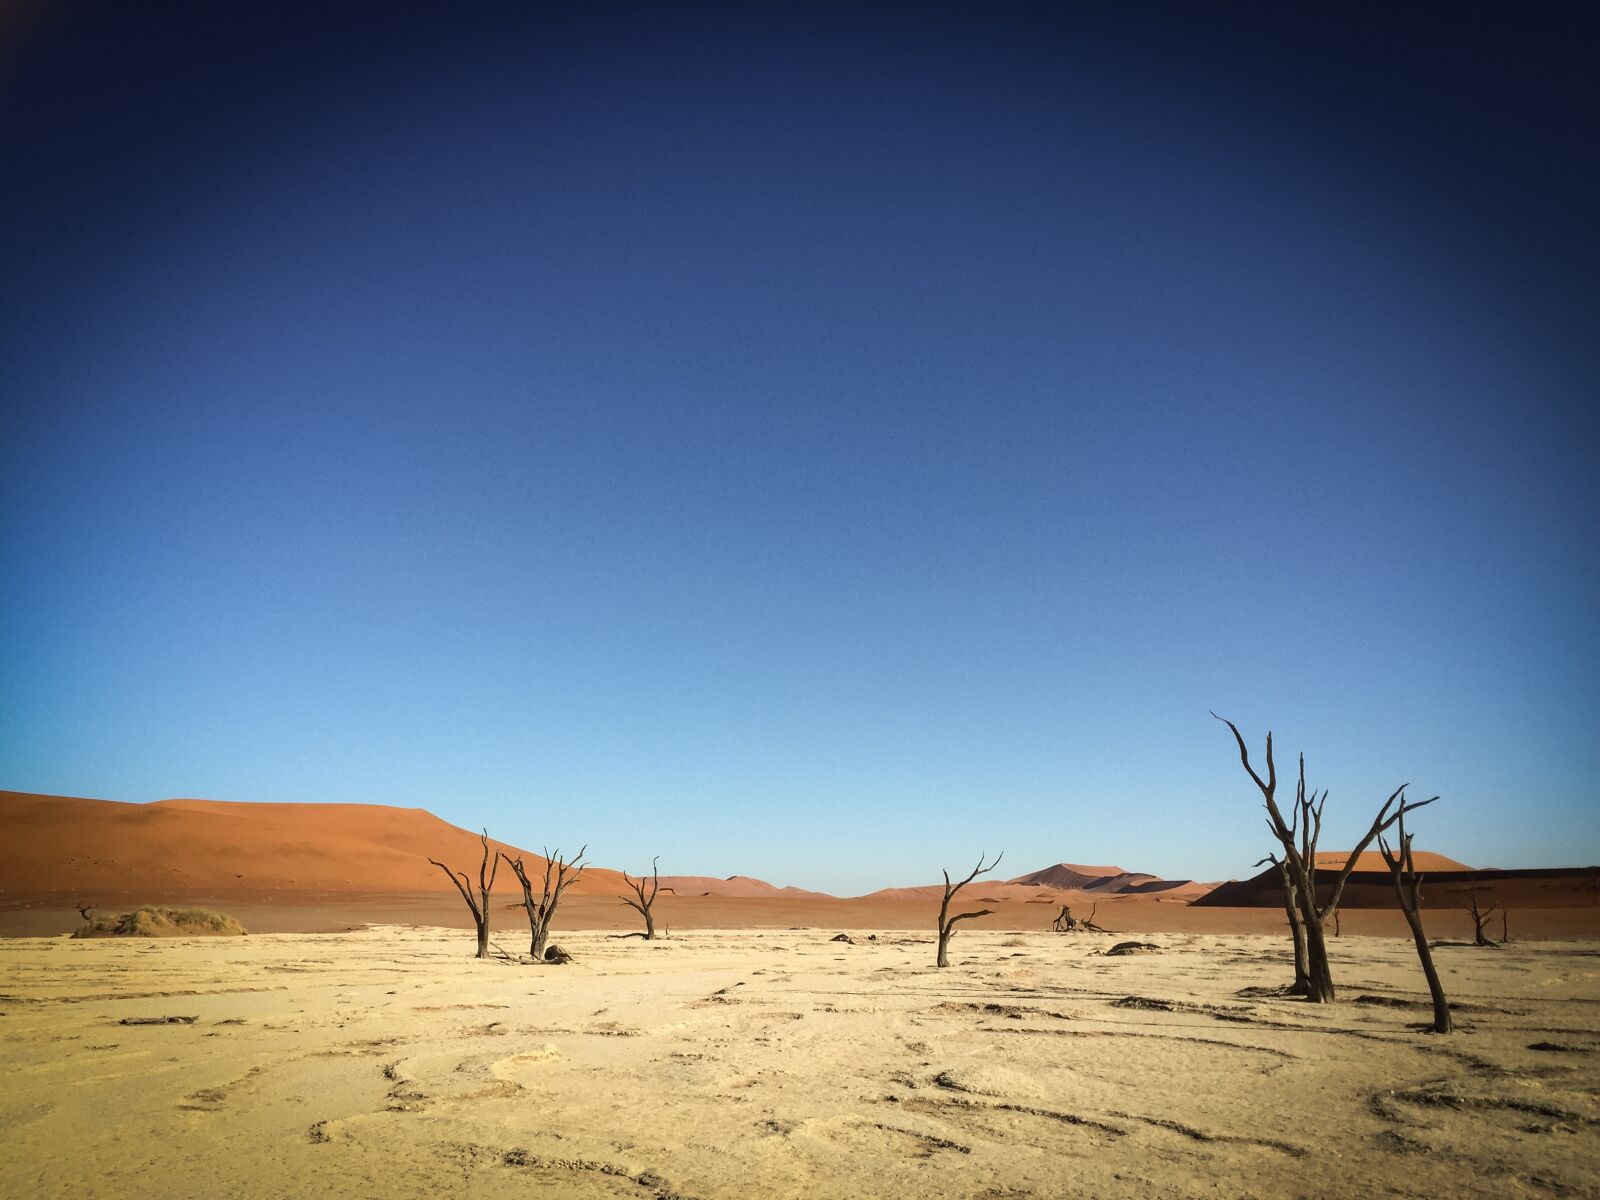 Apple iPhone 6 sample photo. Namibia, wildlife, africa photography